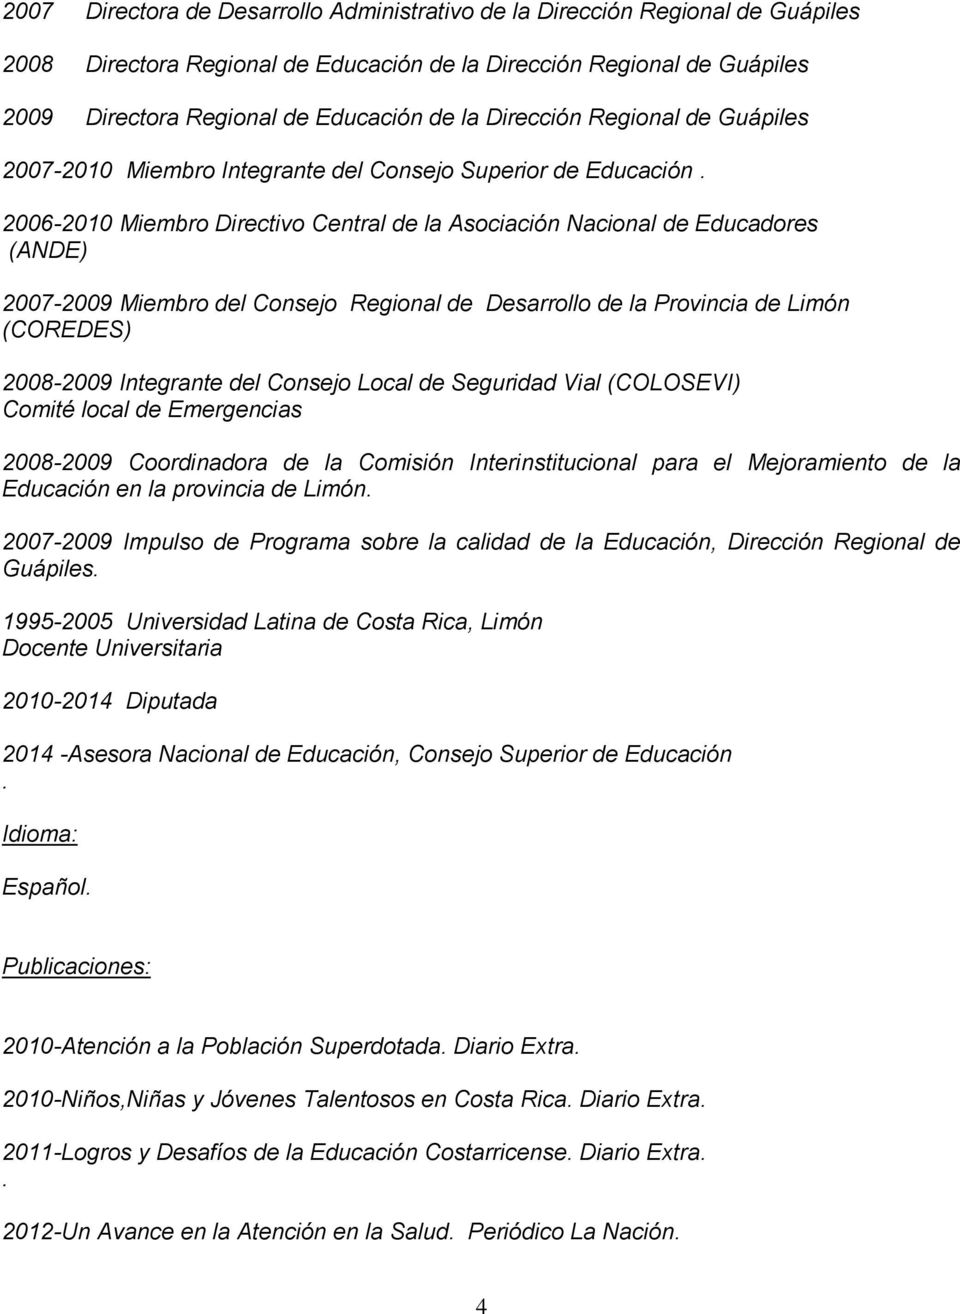 2006-2010 Miembro Directivo Central de la Asociación Nacional de Educadores (ANDE) 2007-2009 Miembro del Consejo Regional de Desarrollo de la Provincia de Limón (COREDES) 2008-2009 Integrante del